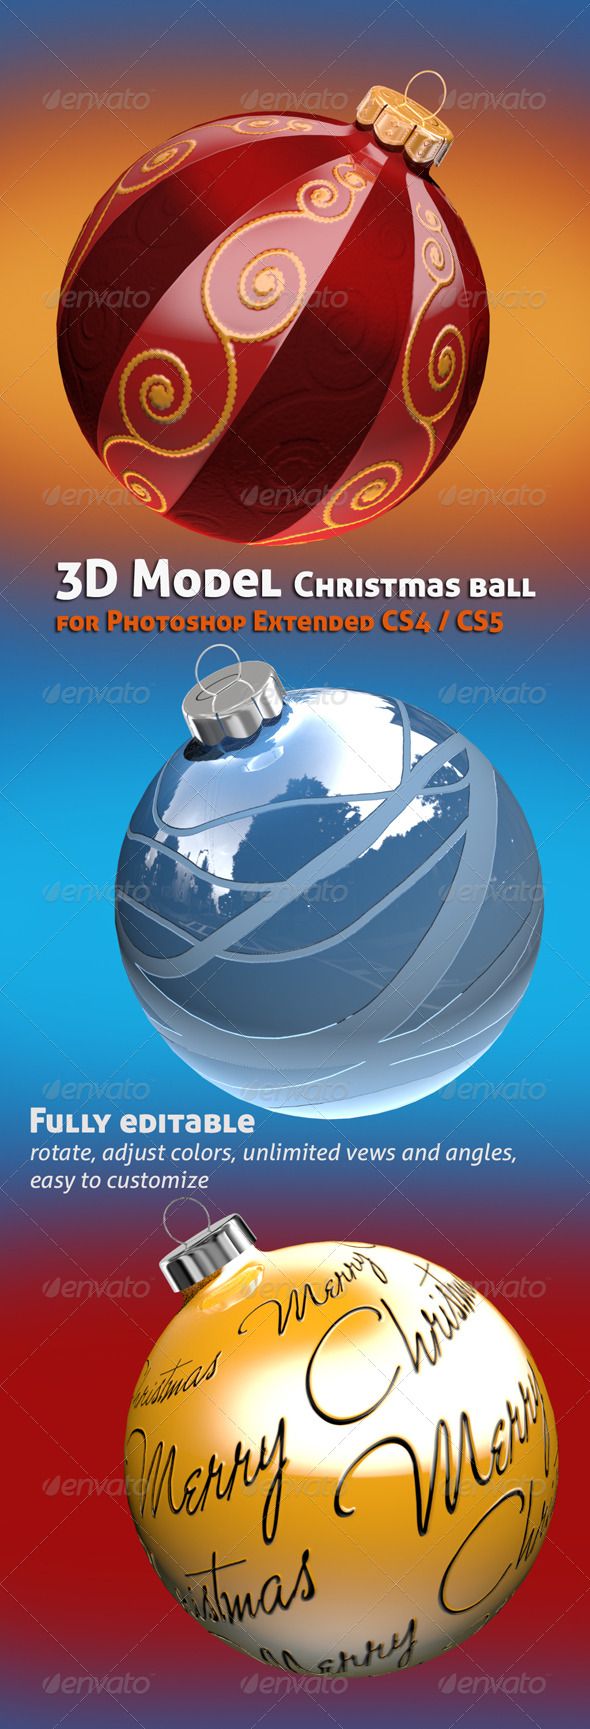 Adobe Photoshop Cs5 3D Materials Download